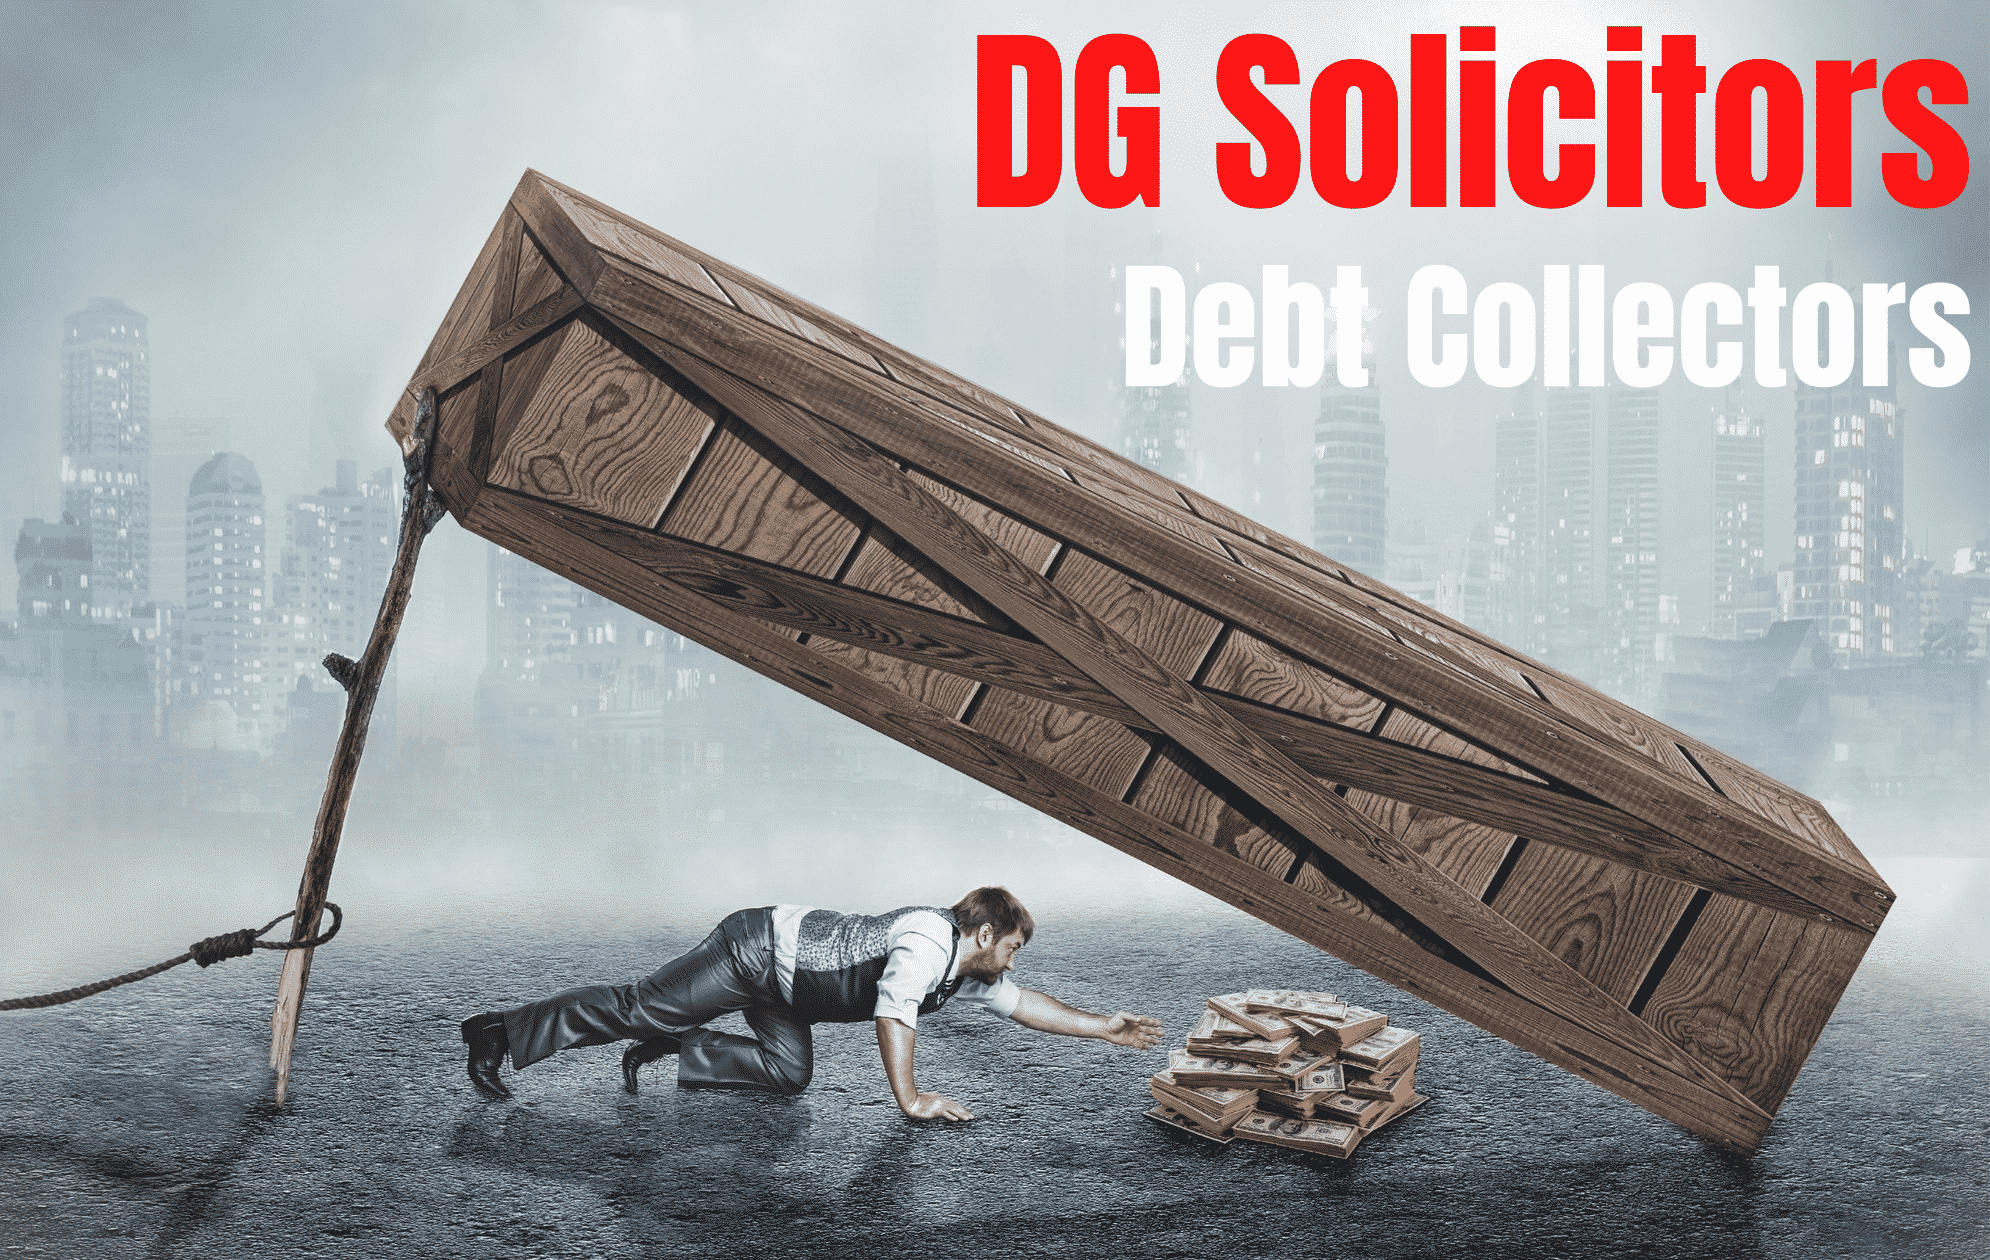 dg-solicitors-debt-collectors